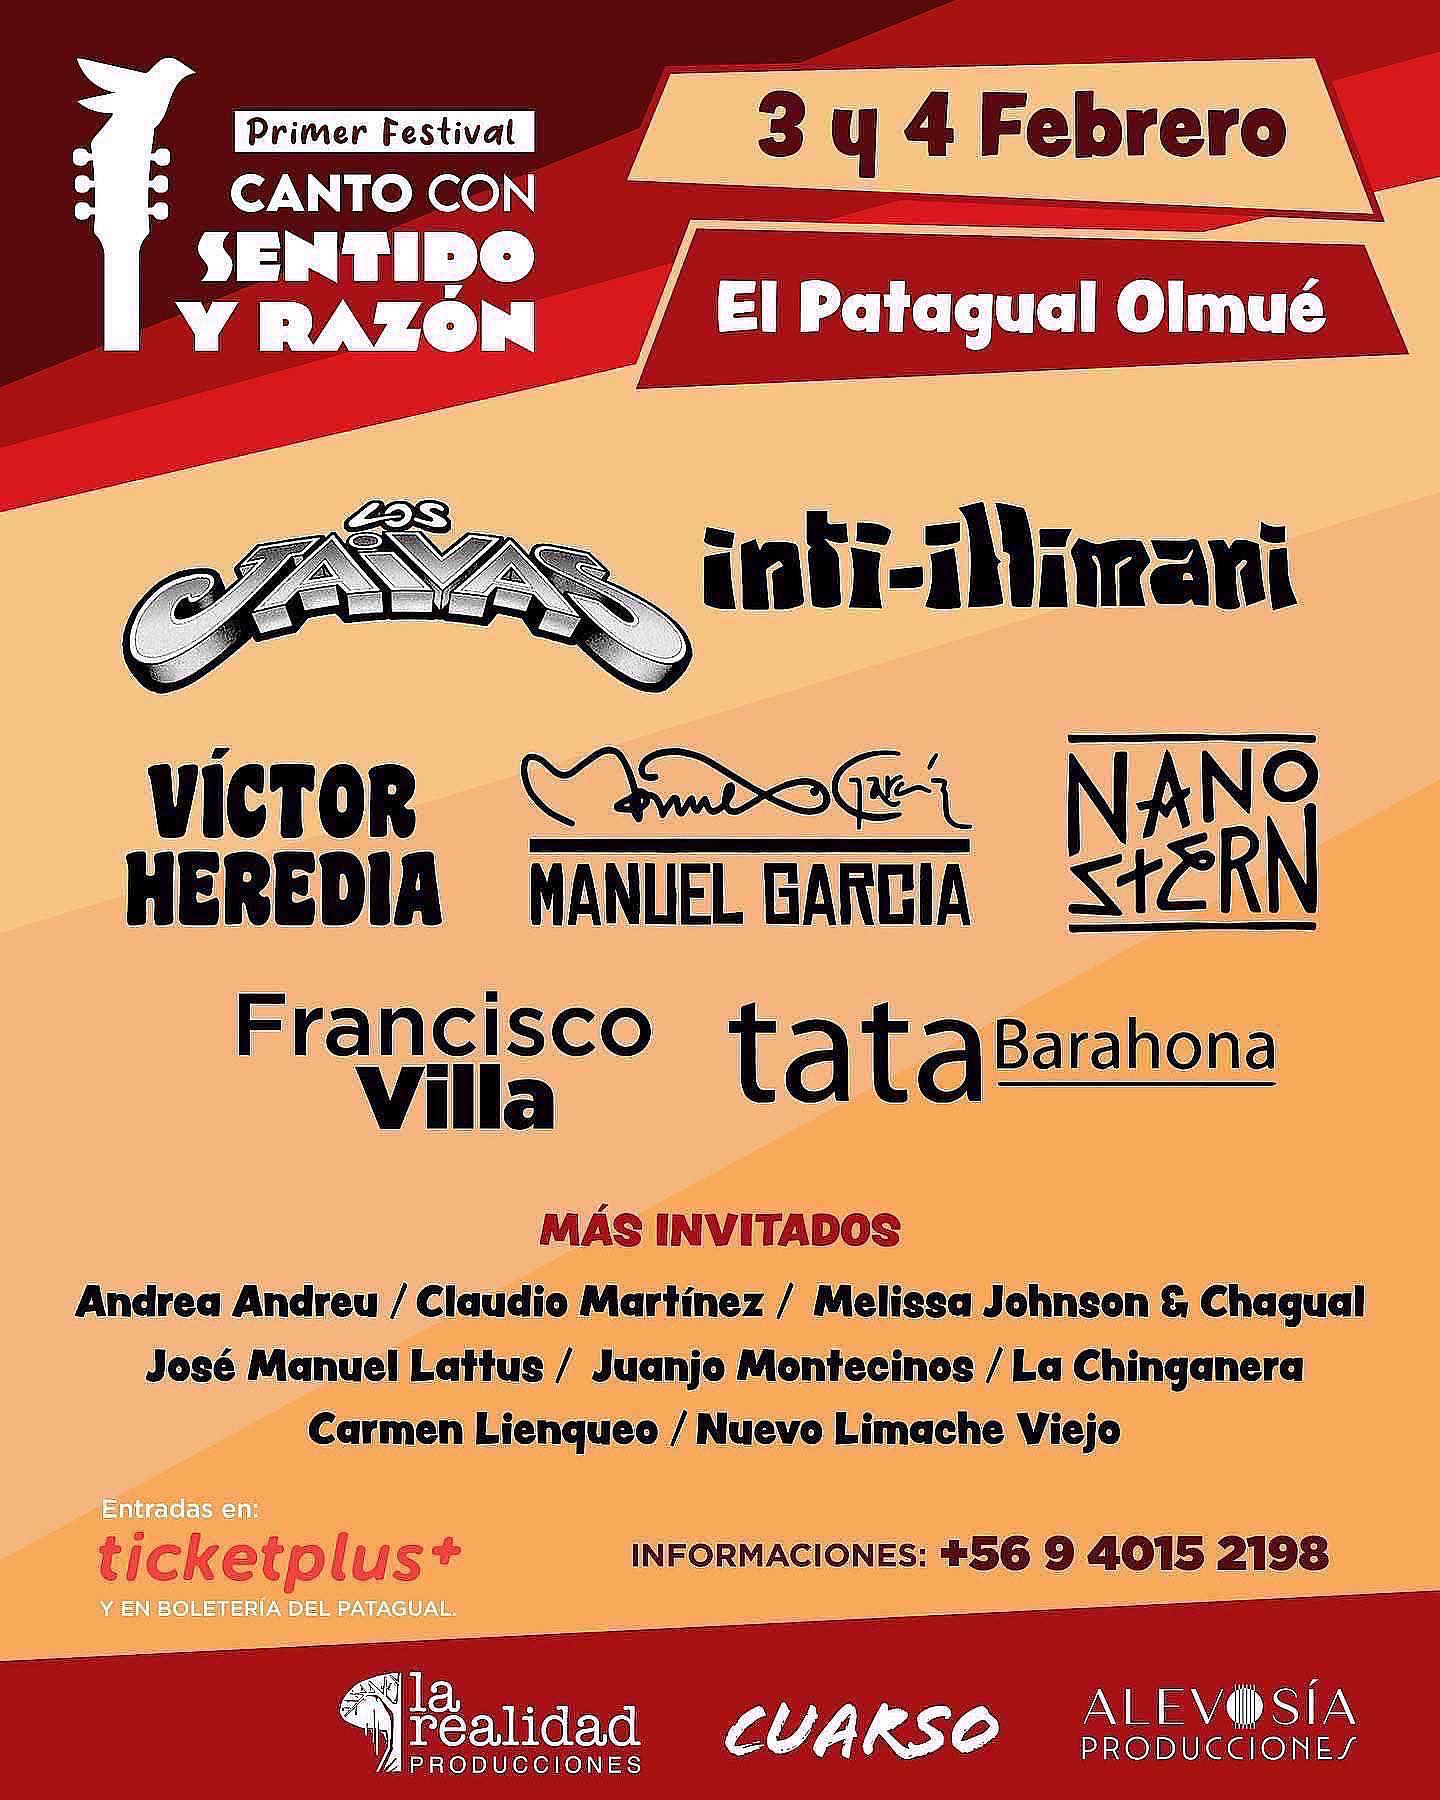 Invitan al primer festival «Canto con Sentido y Razón»: 3 y 4 de febrero en El Patagual de Olmué